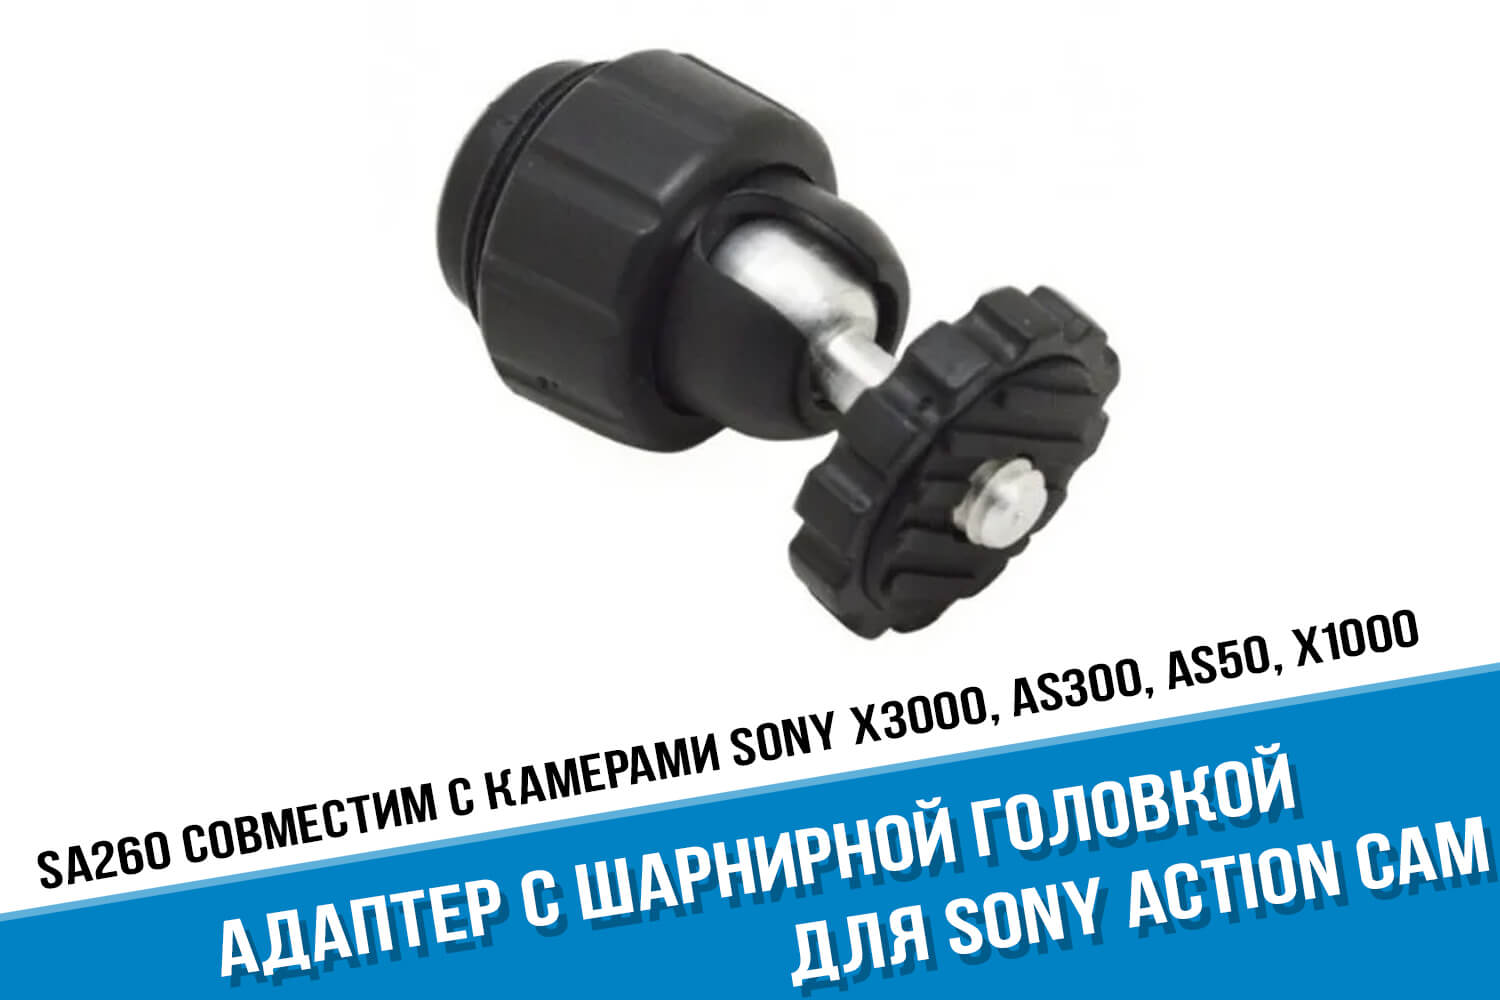 Адаптер с шарнирной головкой для камеры Sony Action Cam